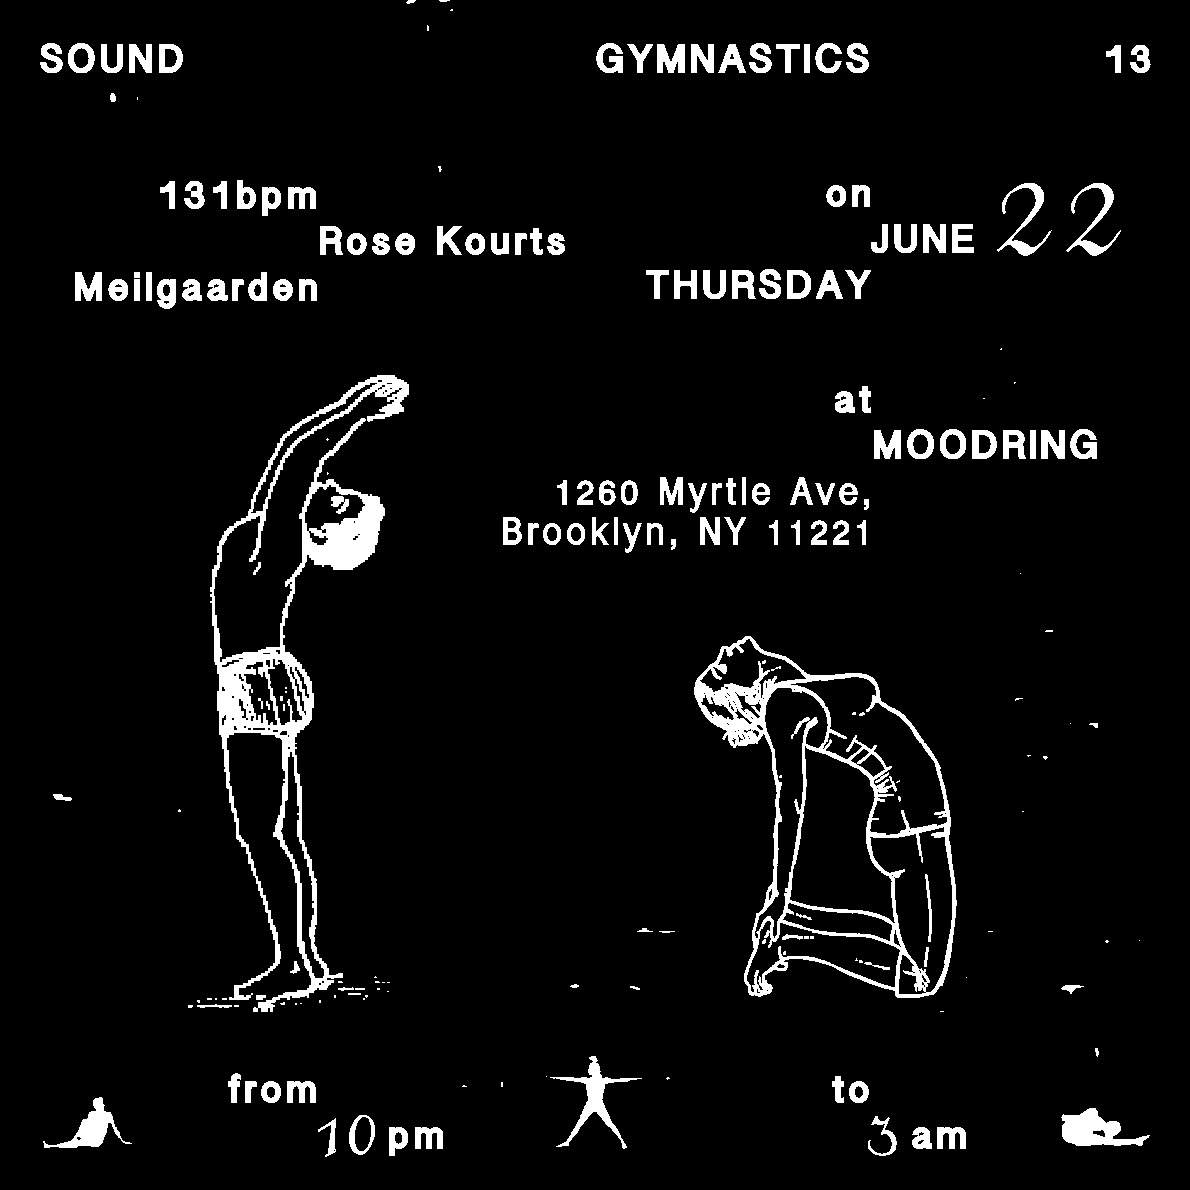 Sound Gymnastics with 131bpm, Rose Kourts, Meilgaarden - Página frontal